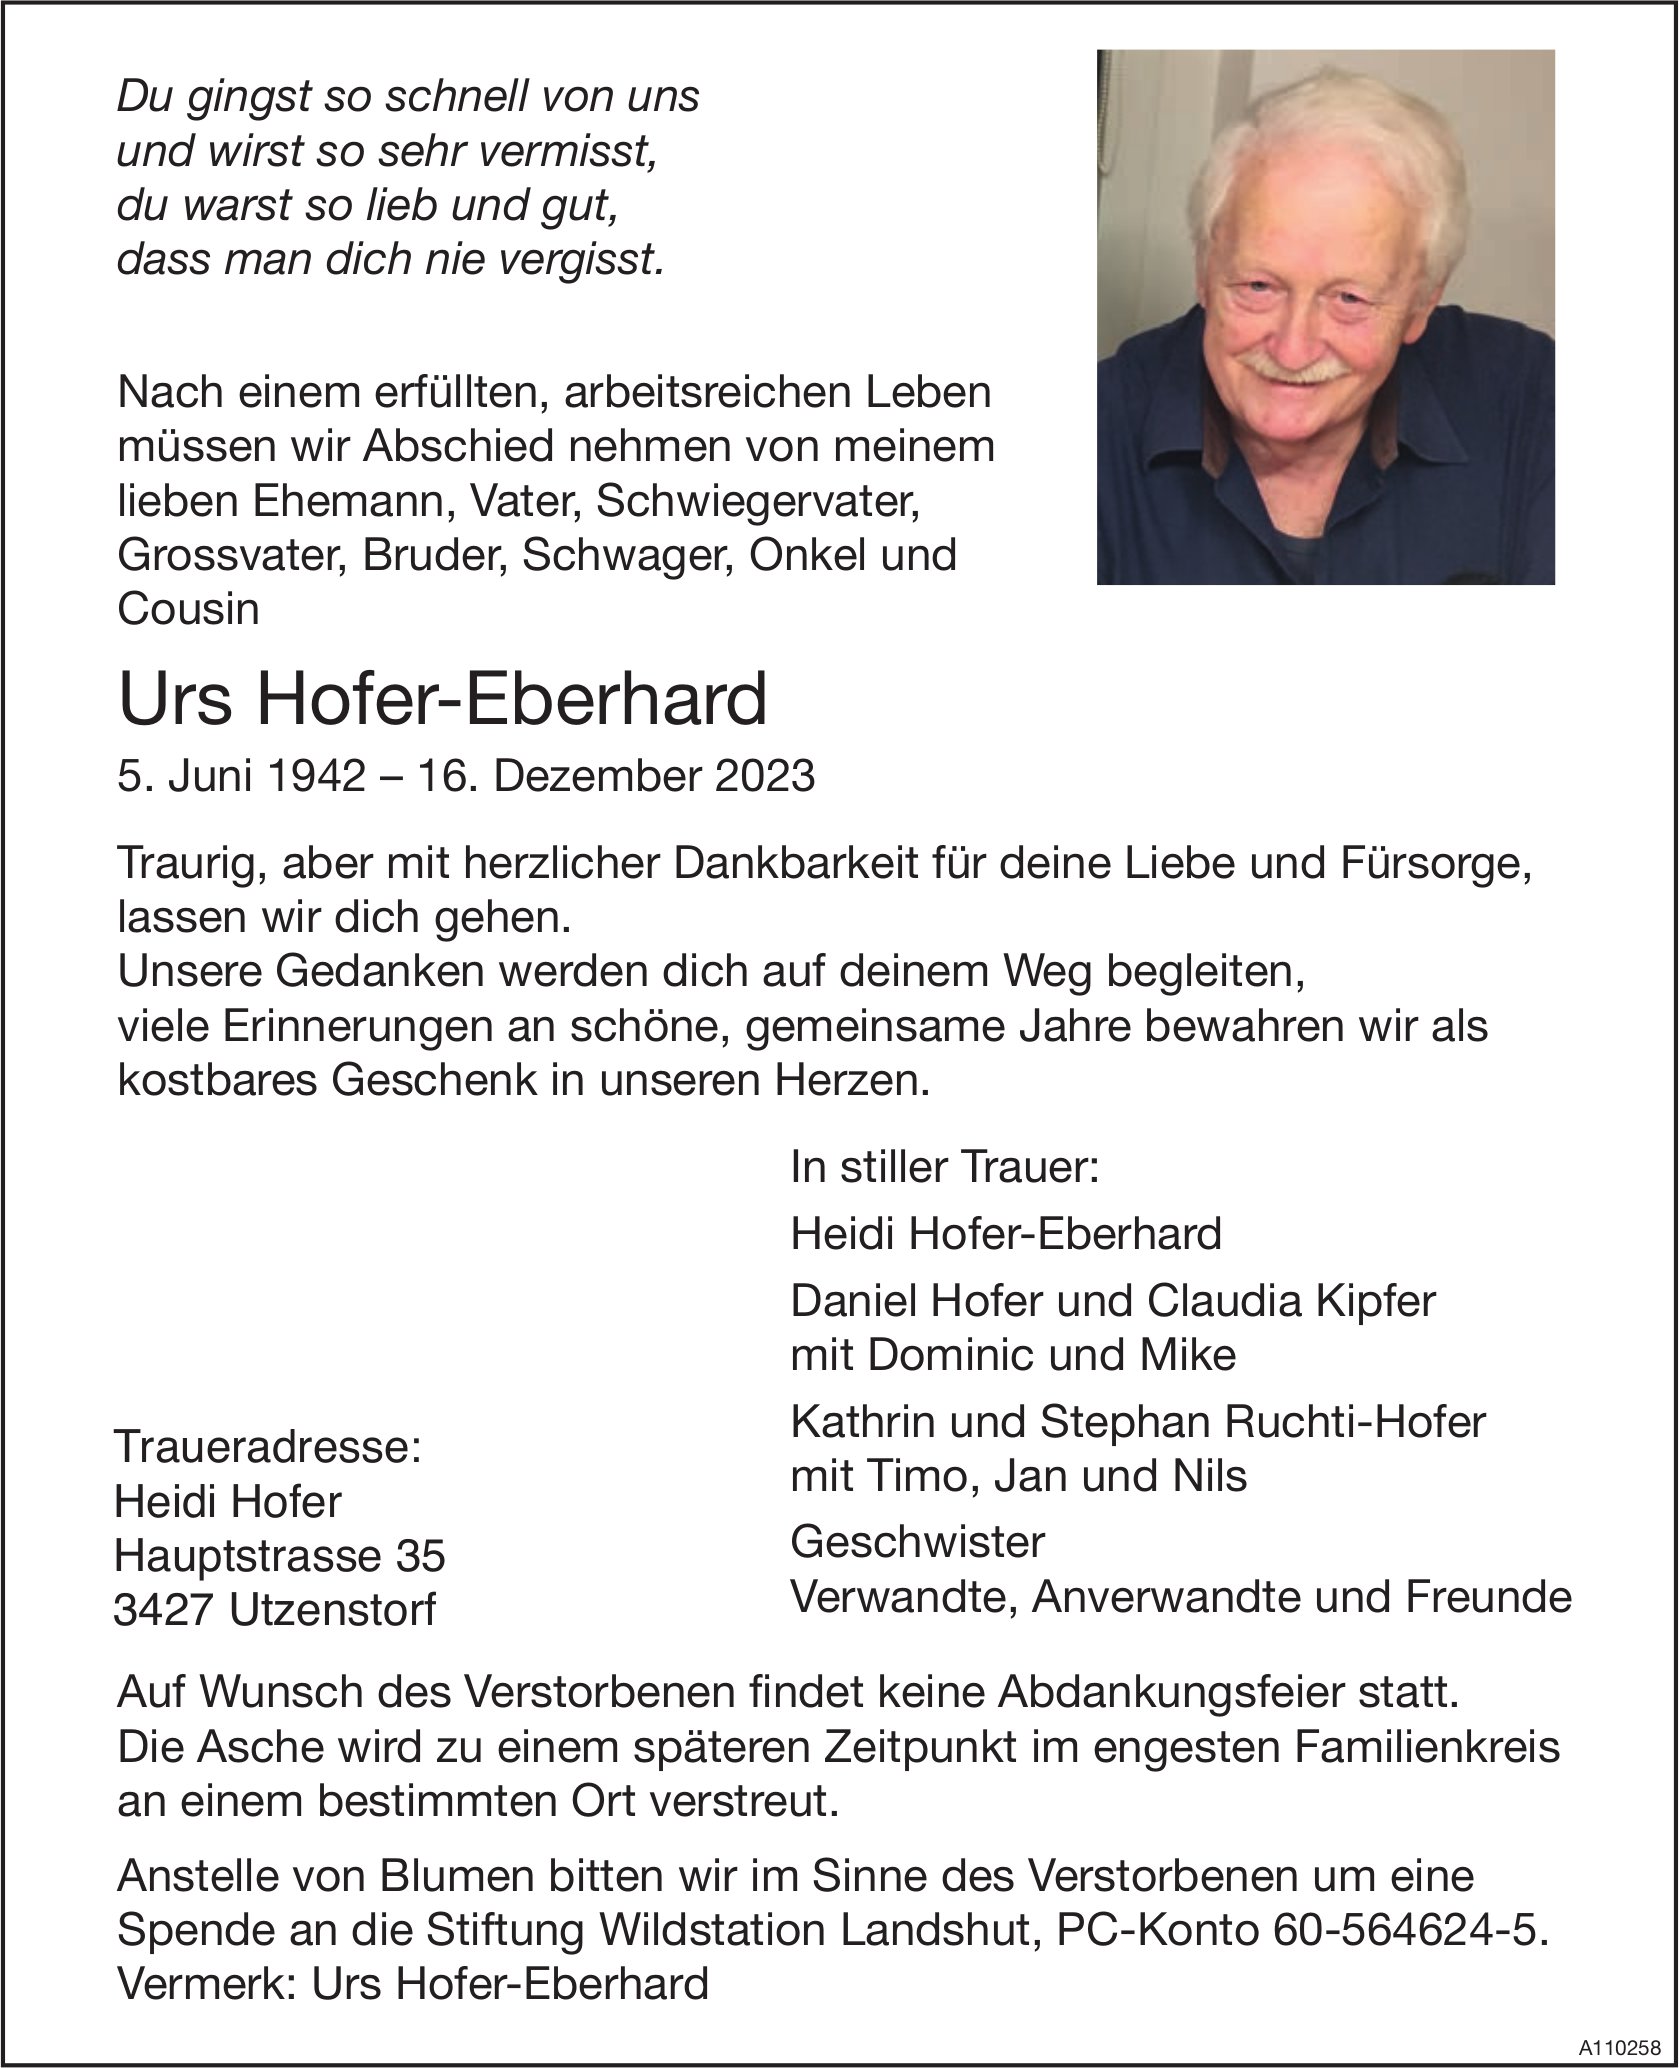 Urs Hofer-Eberhard, Dezember 2023 / TA